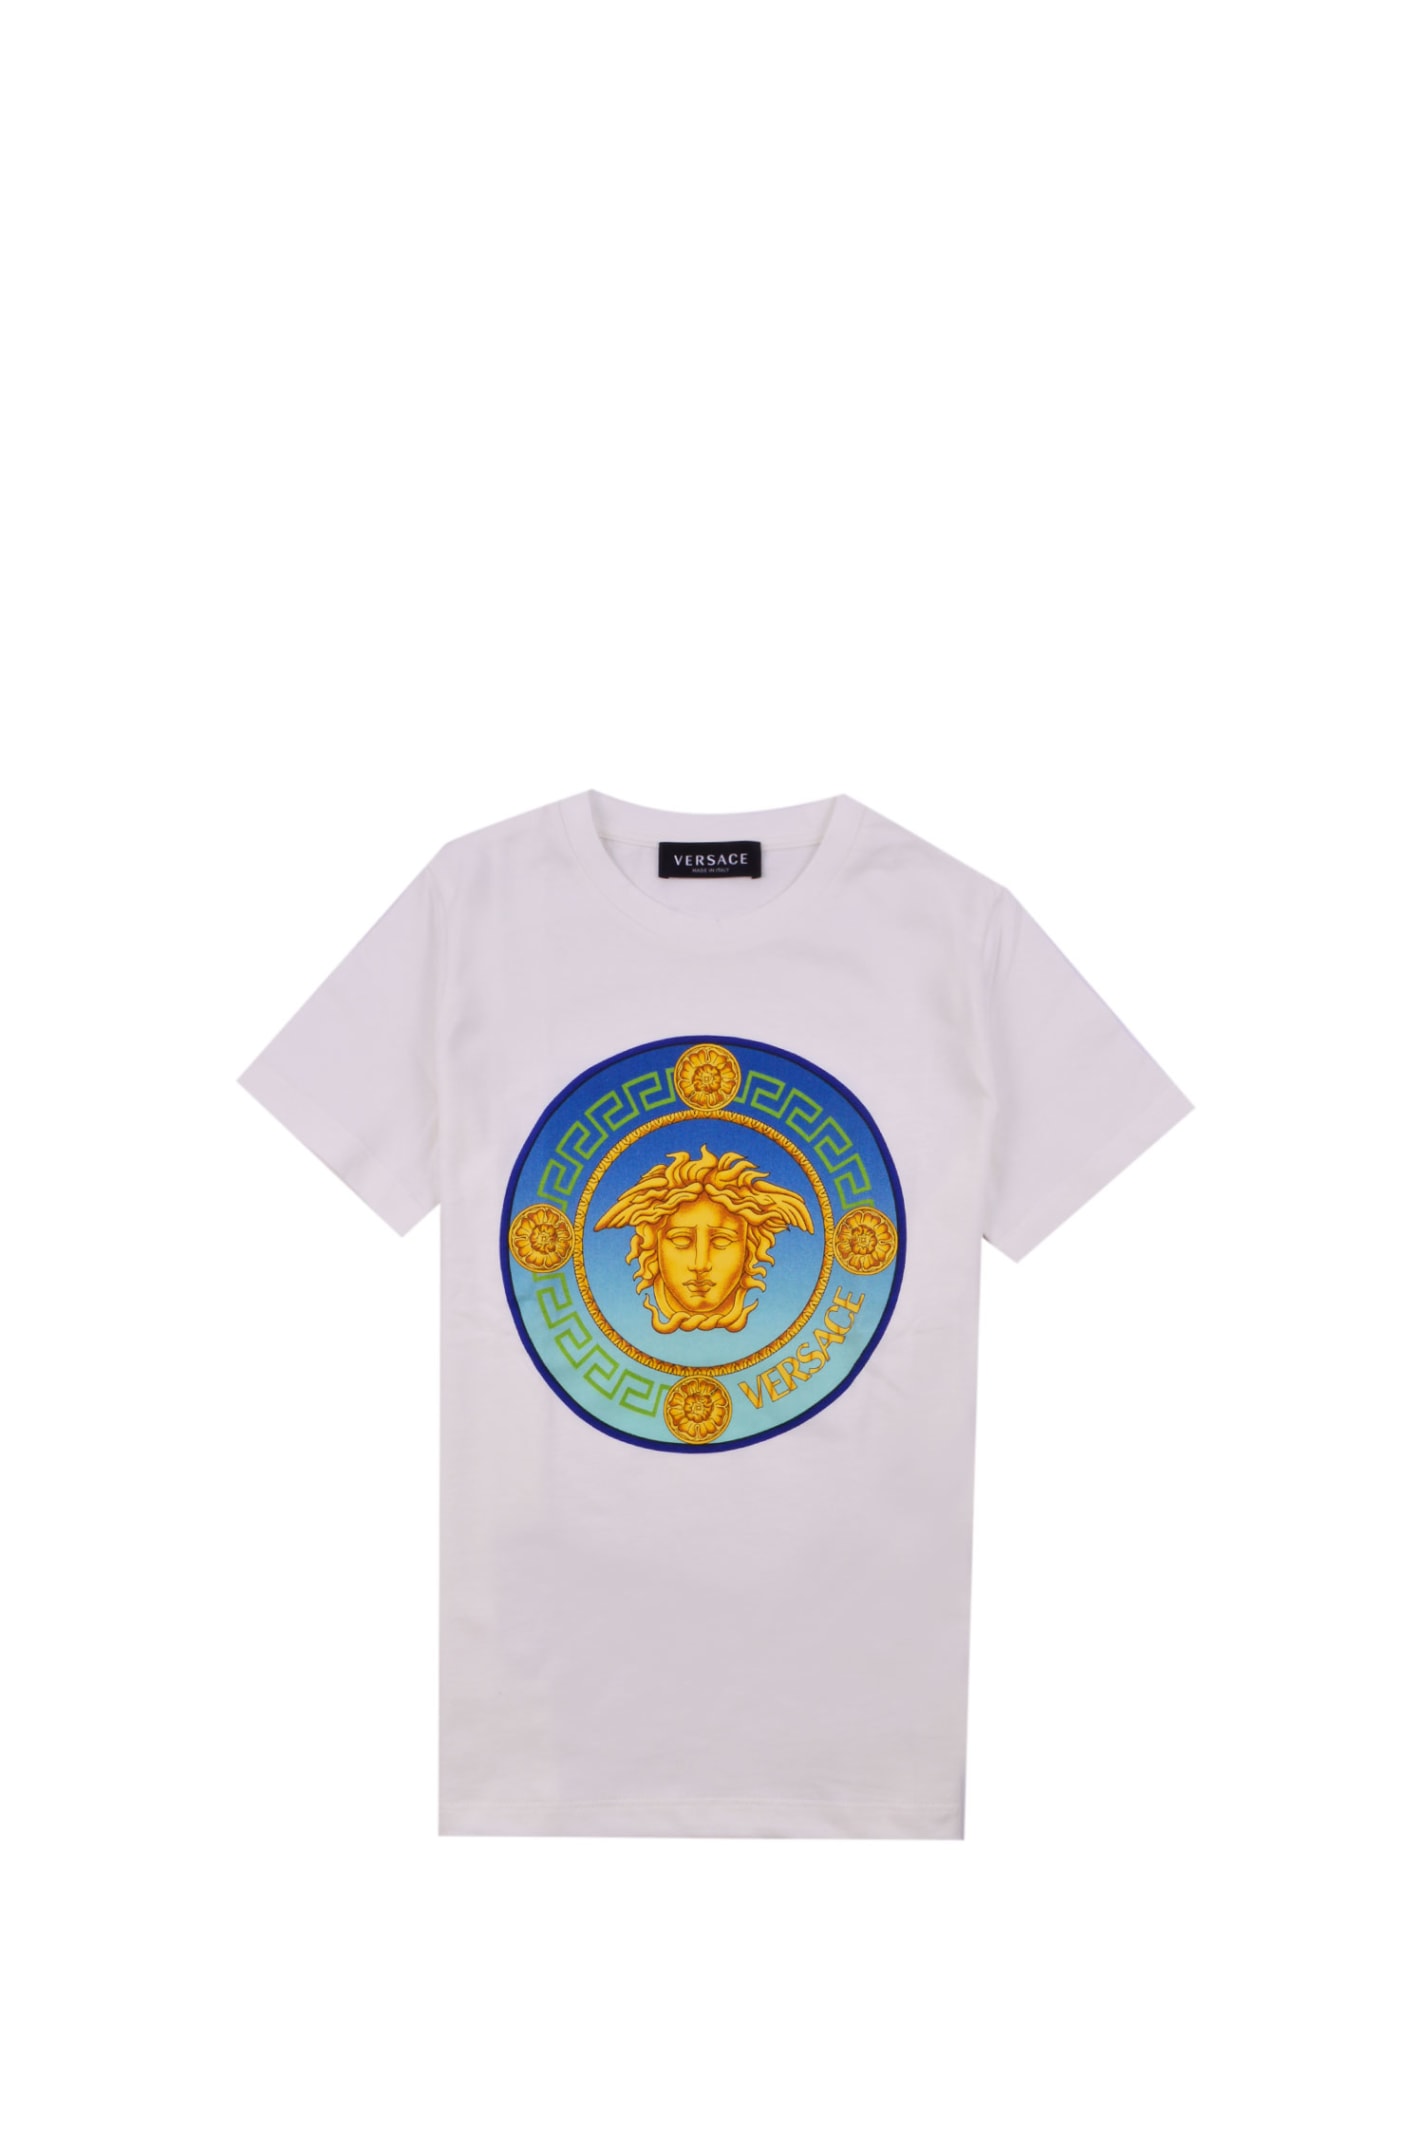 Versace Medusa Logo Cotton T-shirt